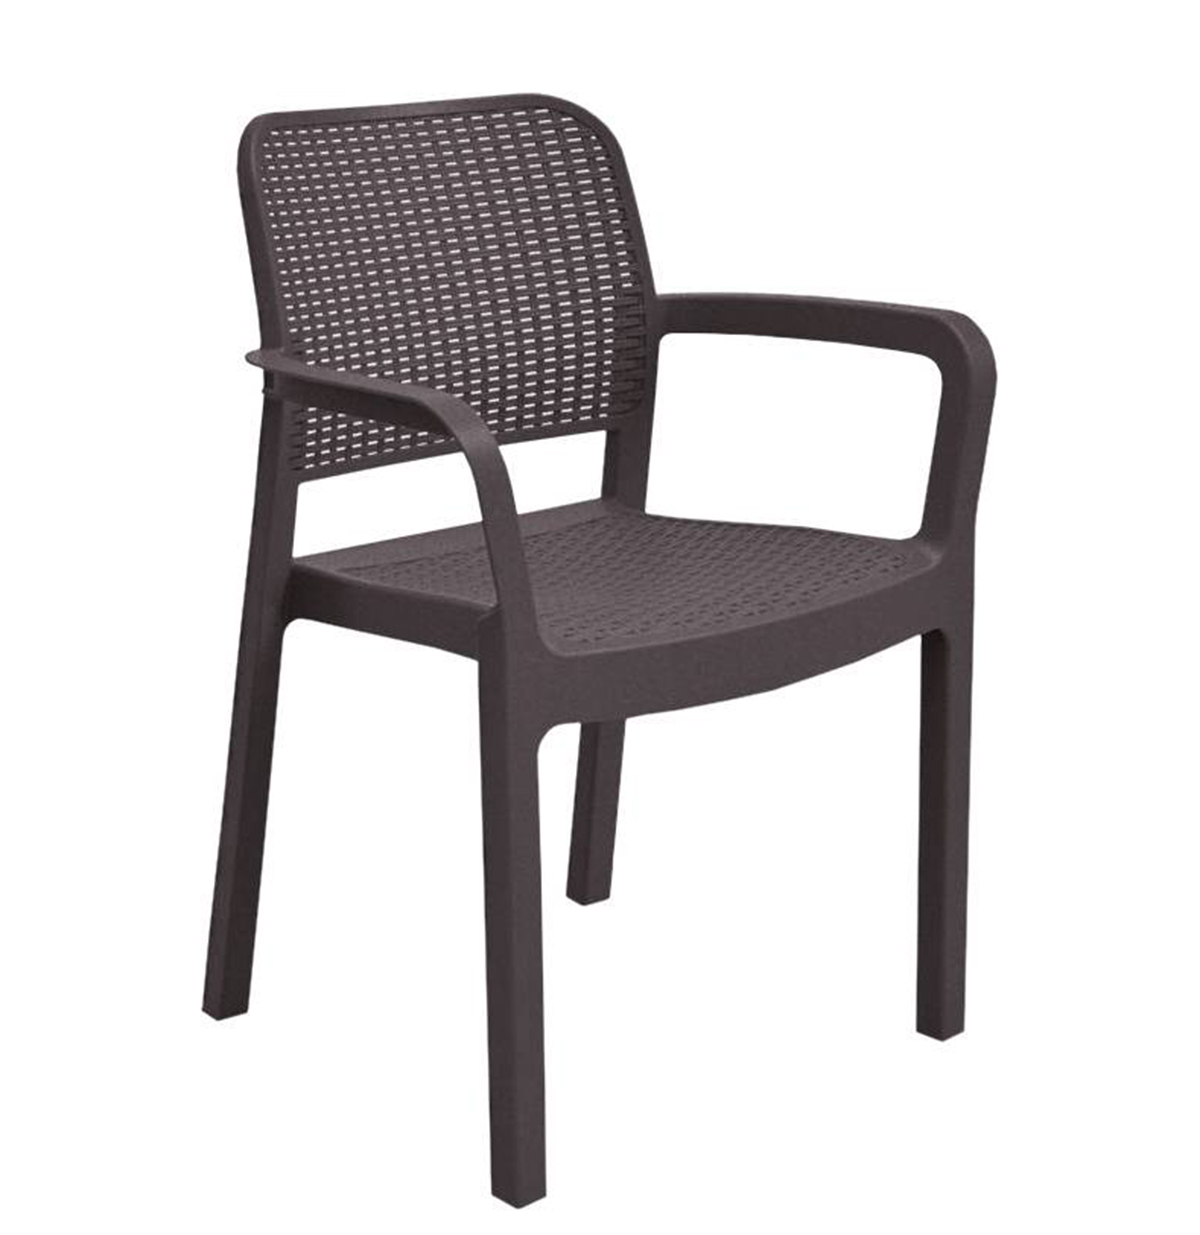 Стул Саманна коричневый кресло руководителя oxford хром коричневый с перфорацией 2 tone иск кожа